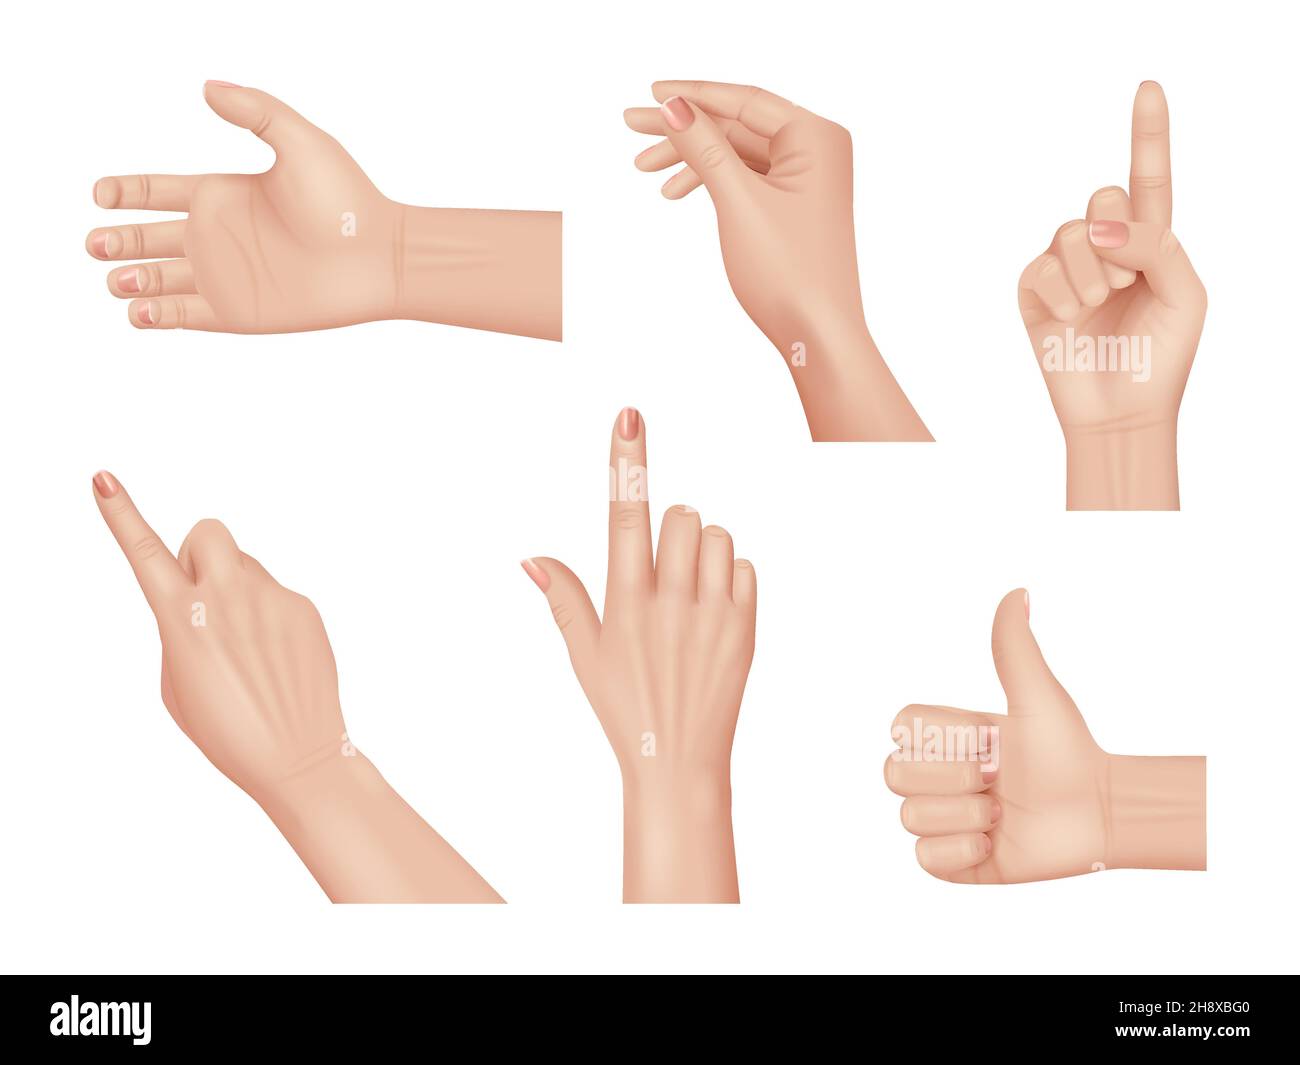 Mains gestes.Réalistes mains humaines anatomie parties du corps paume et doigts décents vecteur mains collection isolée Illustration de Vecteur